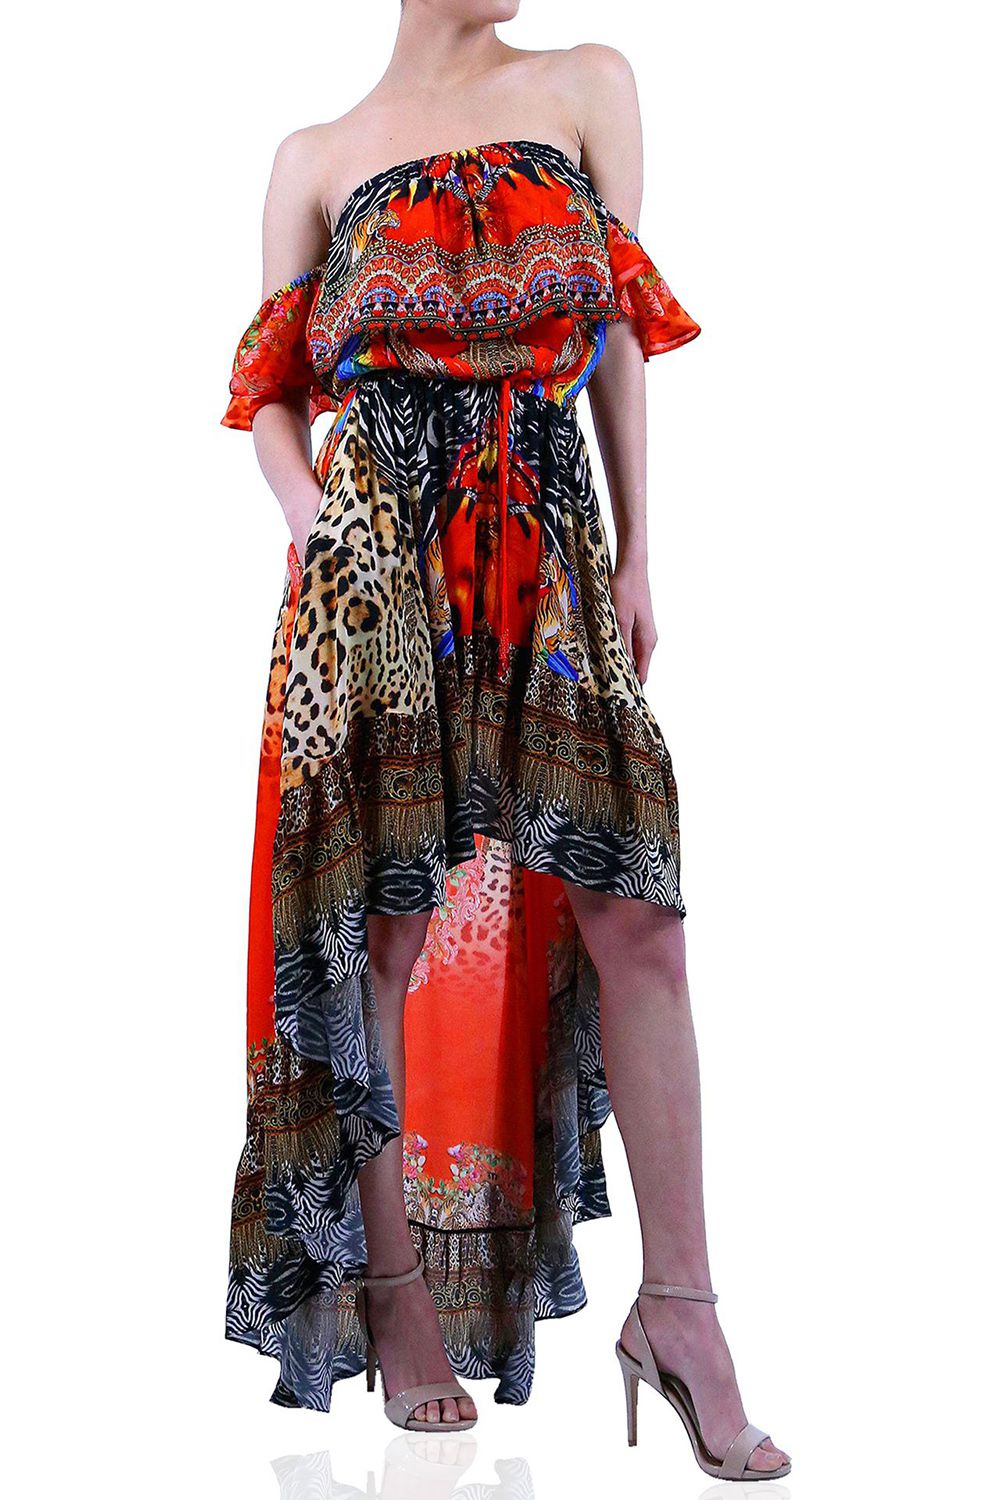  burnt orange long formal dresses, high and low cocktail dresses, plunging v neck formal dress, Shahida Parides,